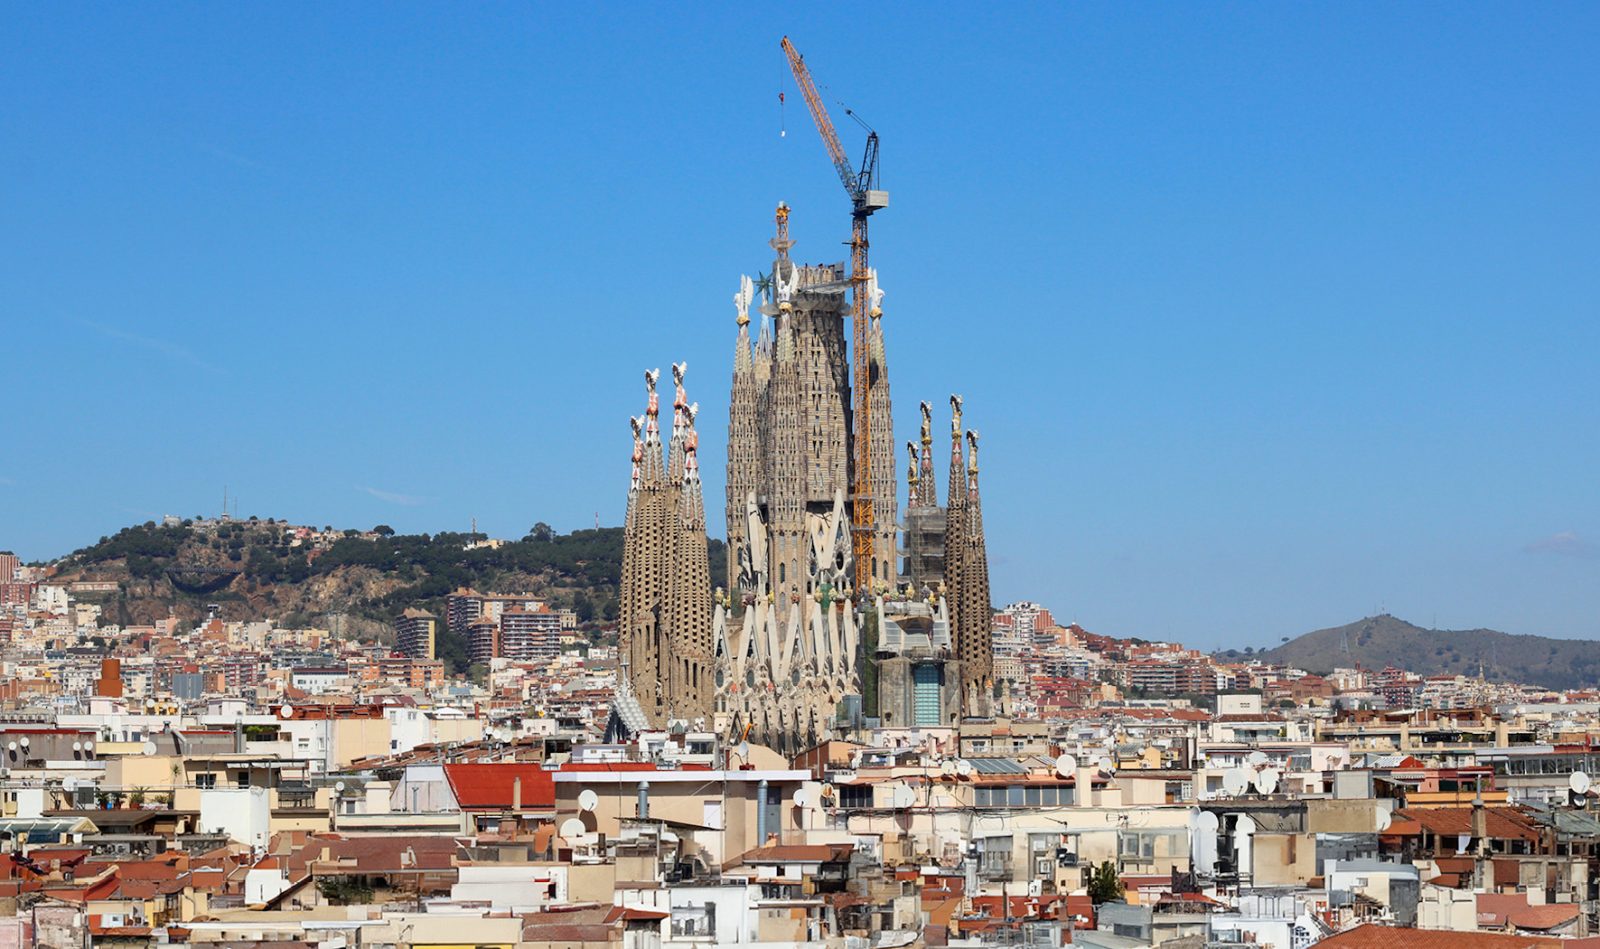 Célegyenesben a Sagrada Família építése